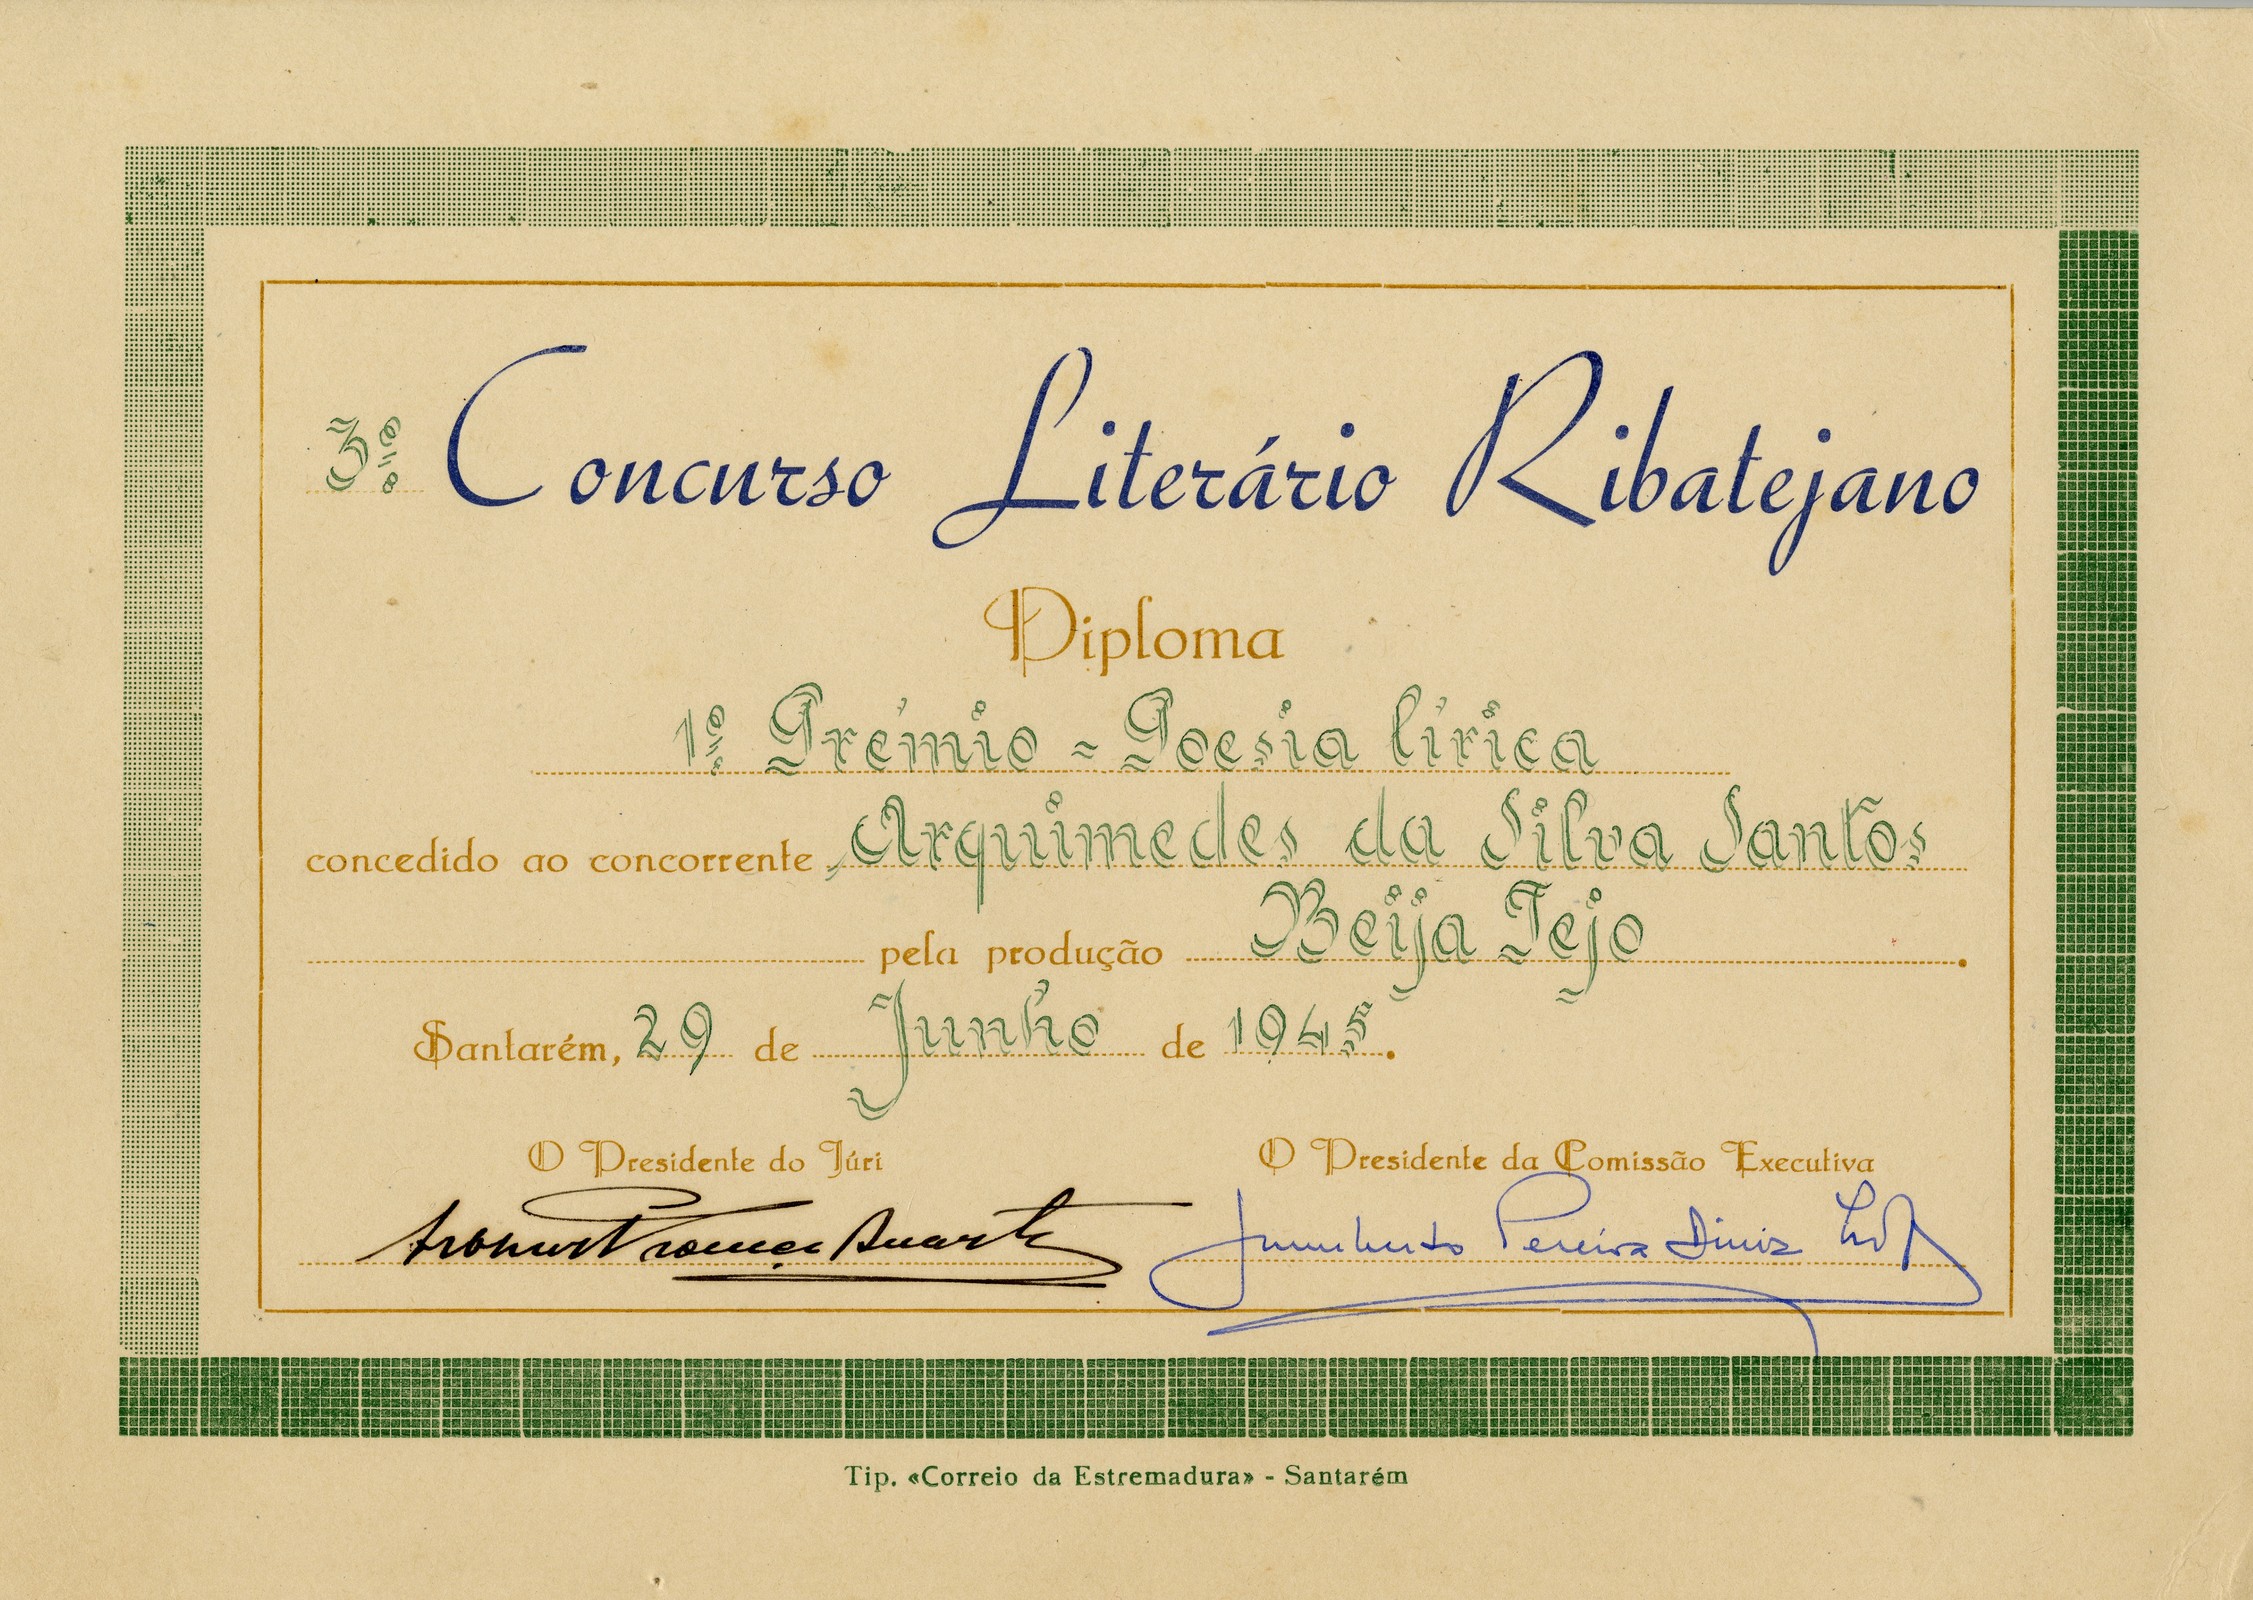 3º Concurso Literário Ribatejano. Santarém, 29 de junho de 1945, Diploma: 1º Prémio - Poesia Lírica